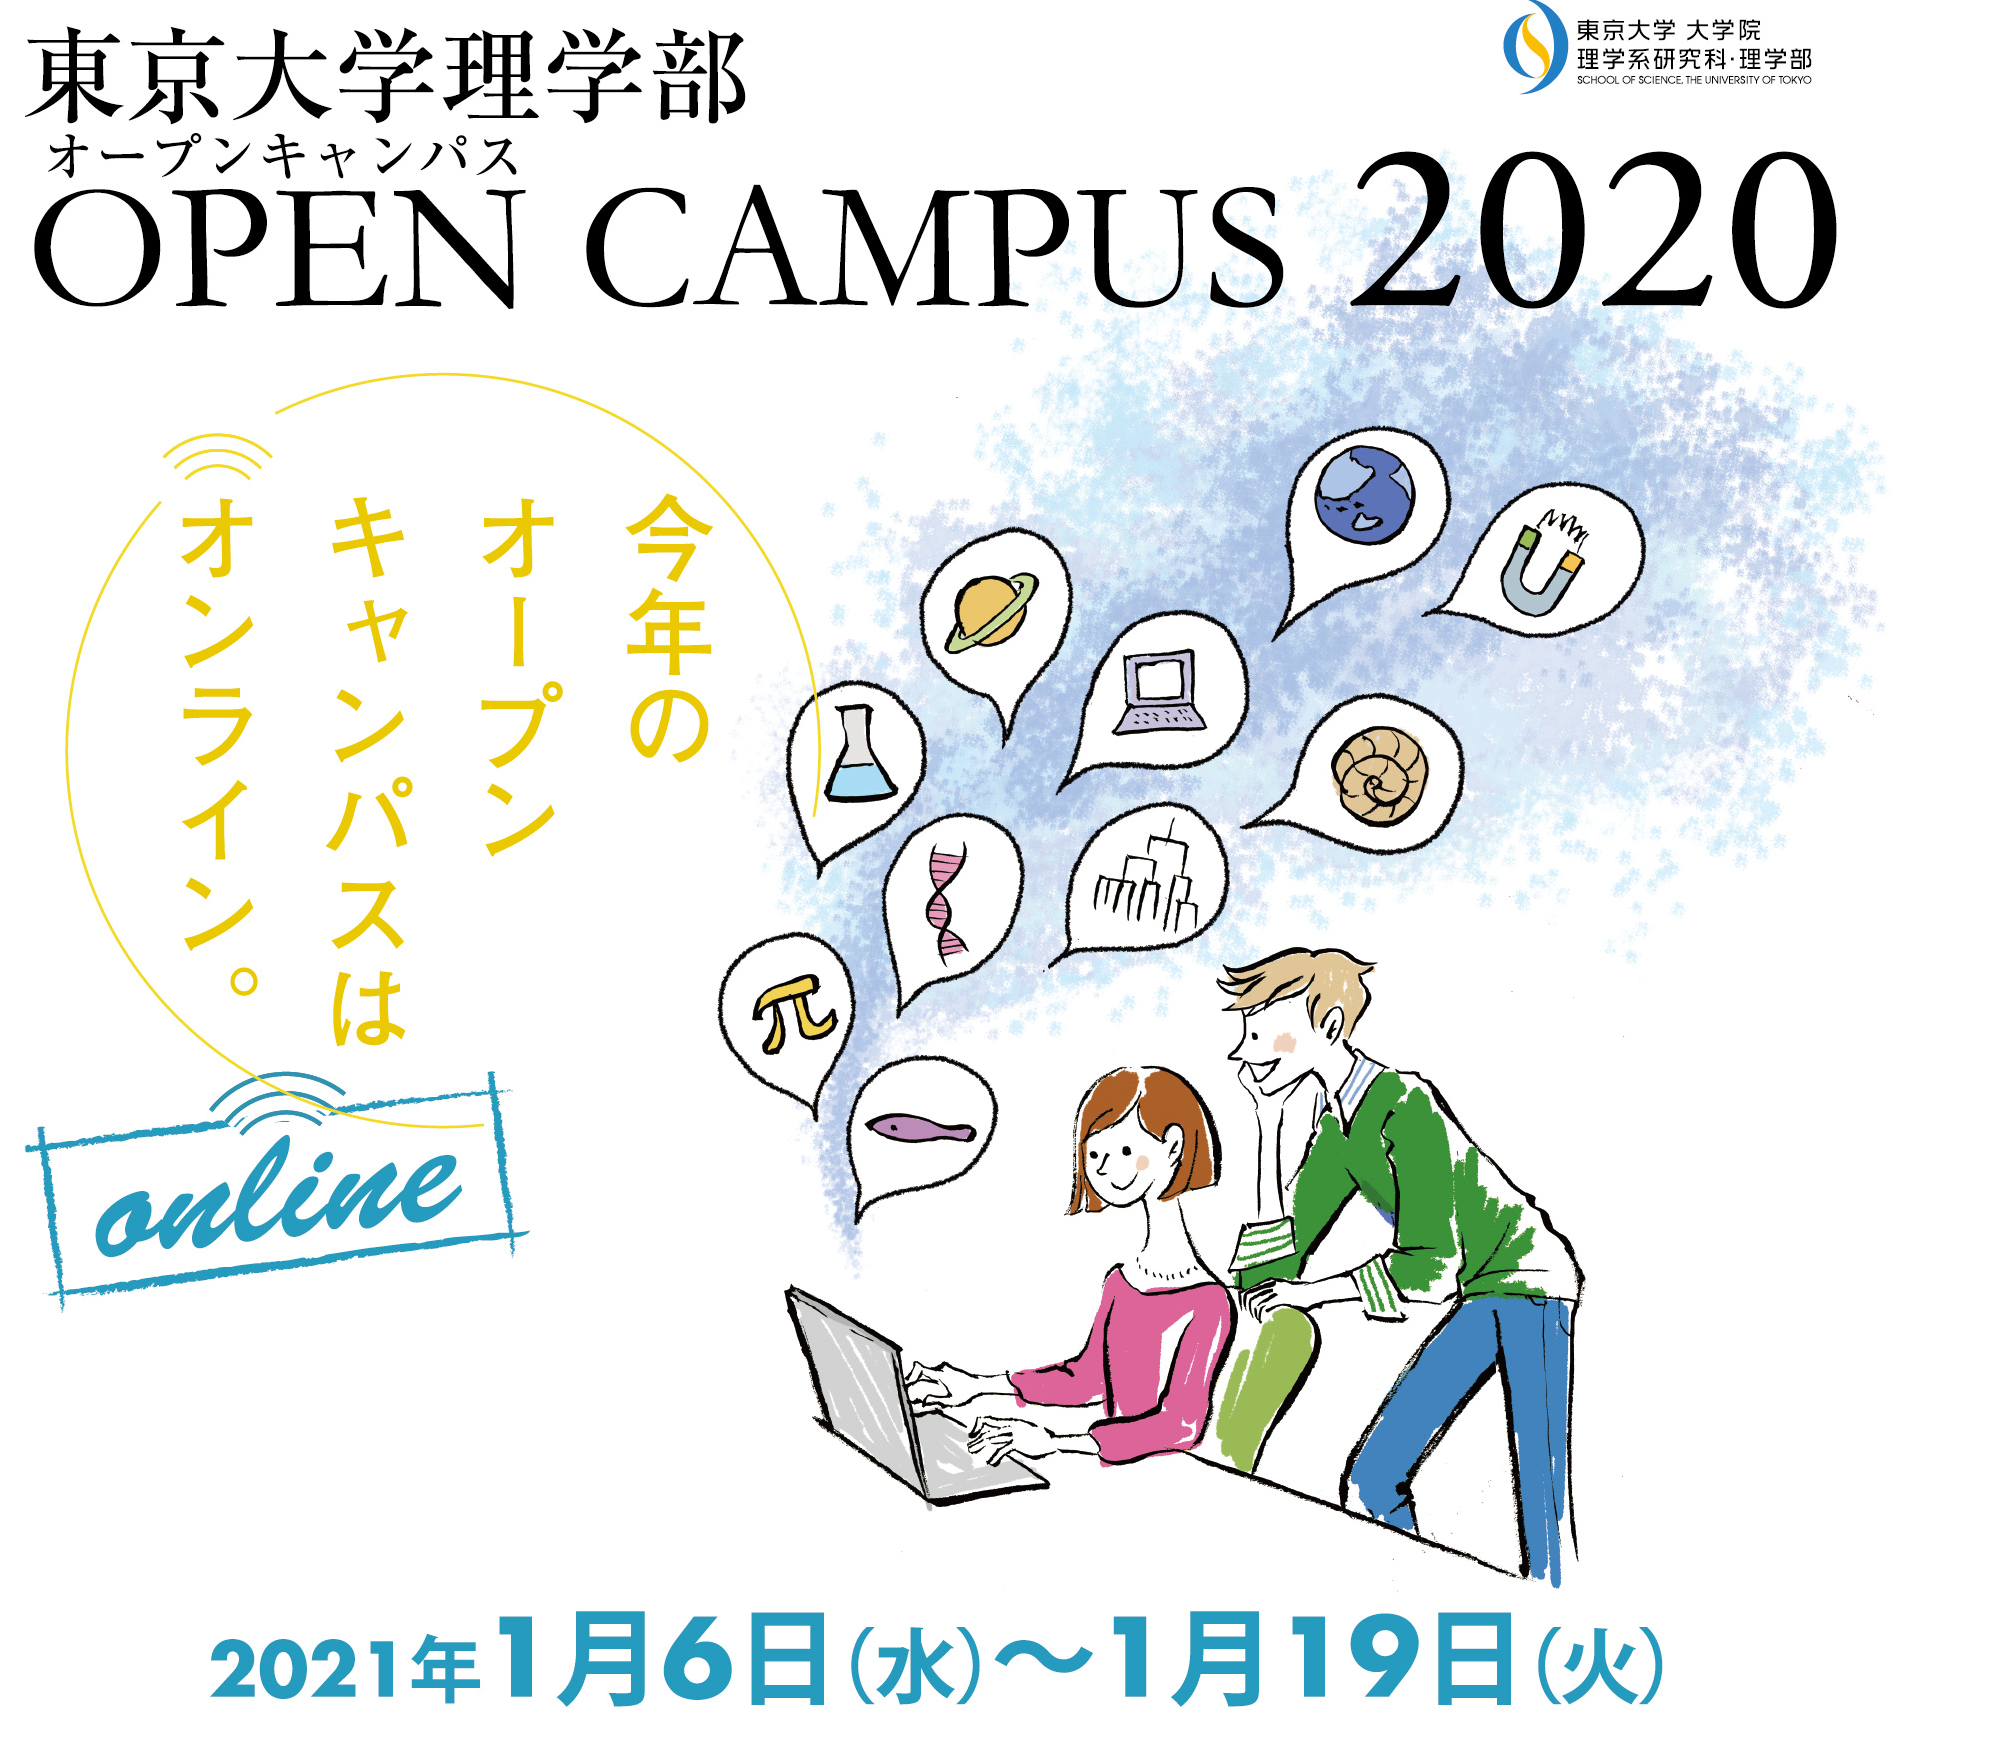 東大理学部オープンキャンパス2020 Online (第2弾）